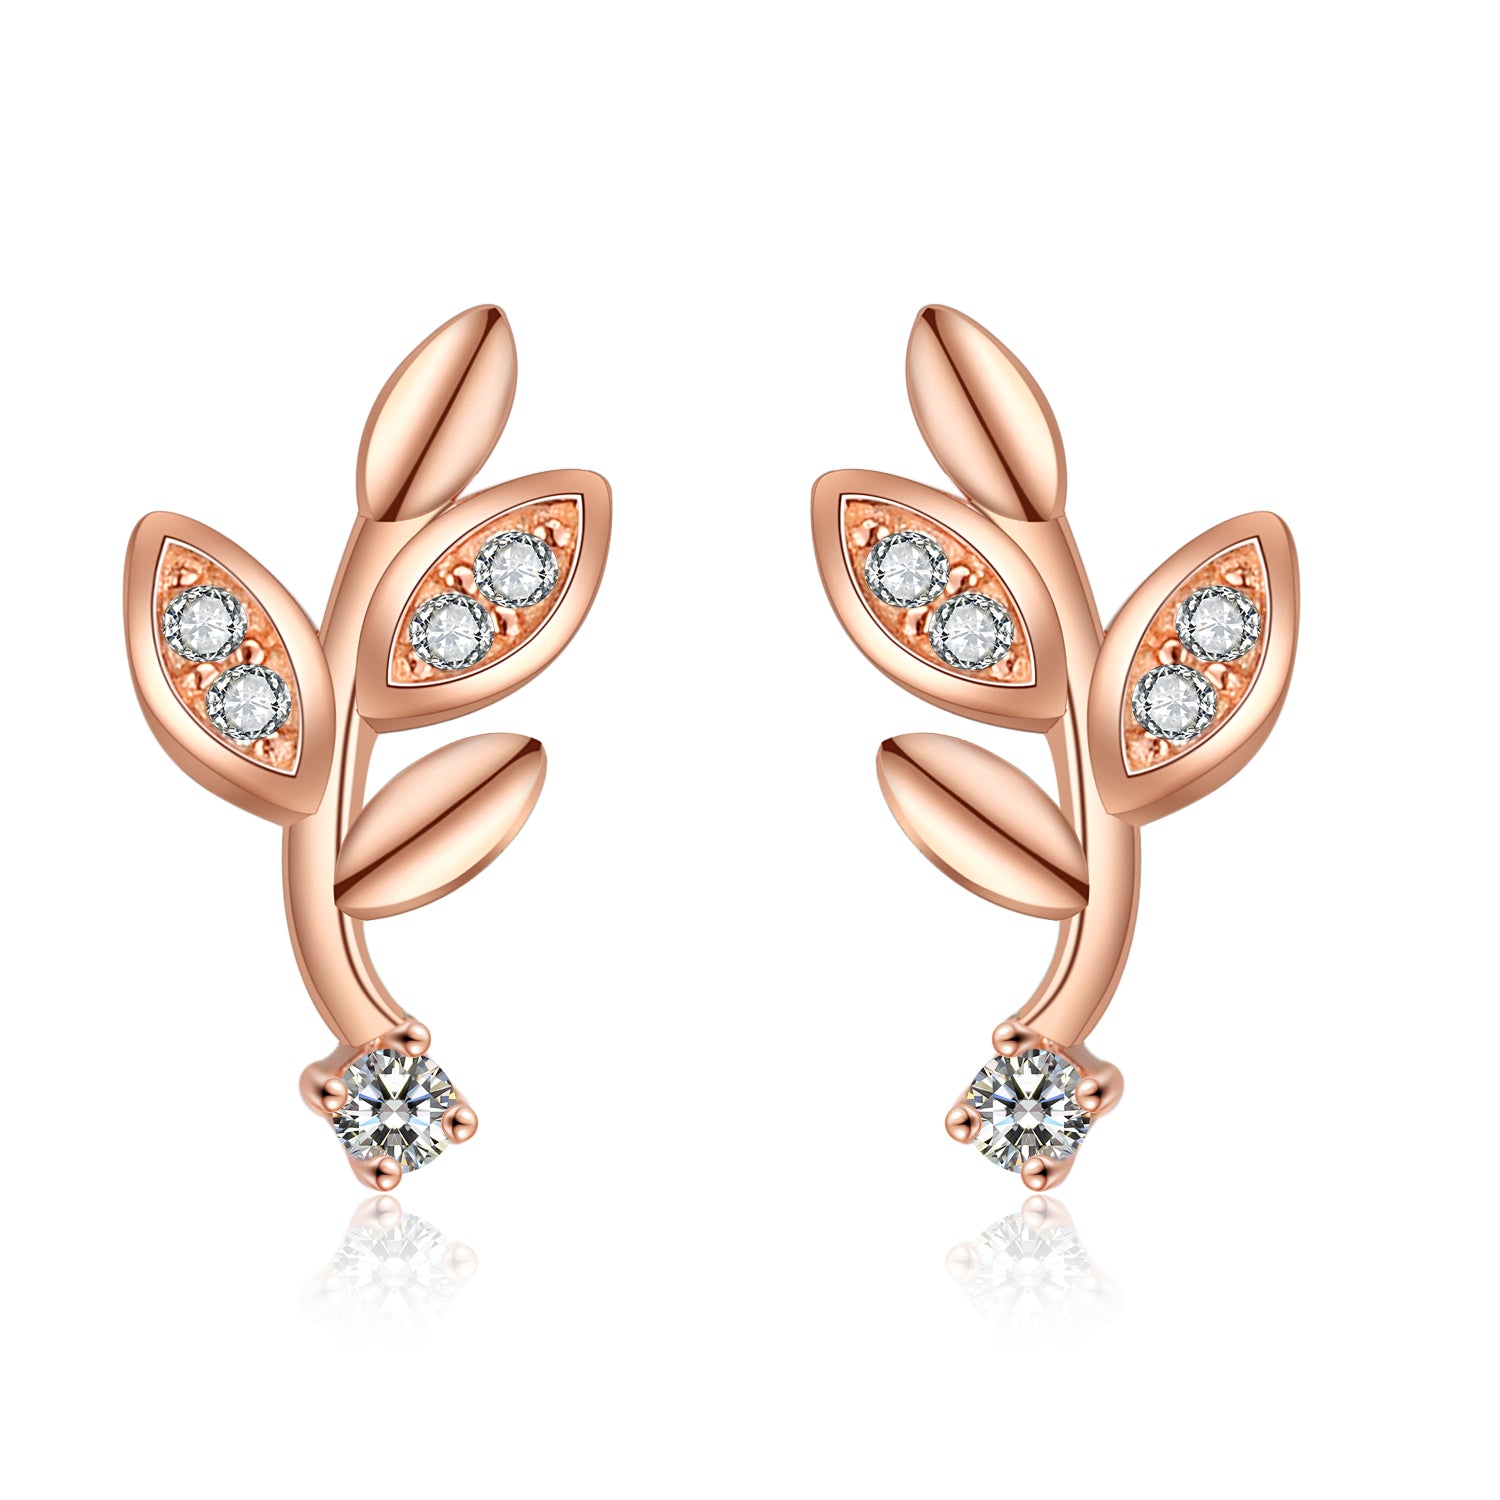 Leaves Custom Earrings Fashion Jewelry Cubic Zirconia Leaves Shape Stud Earrings